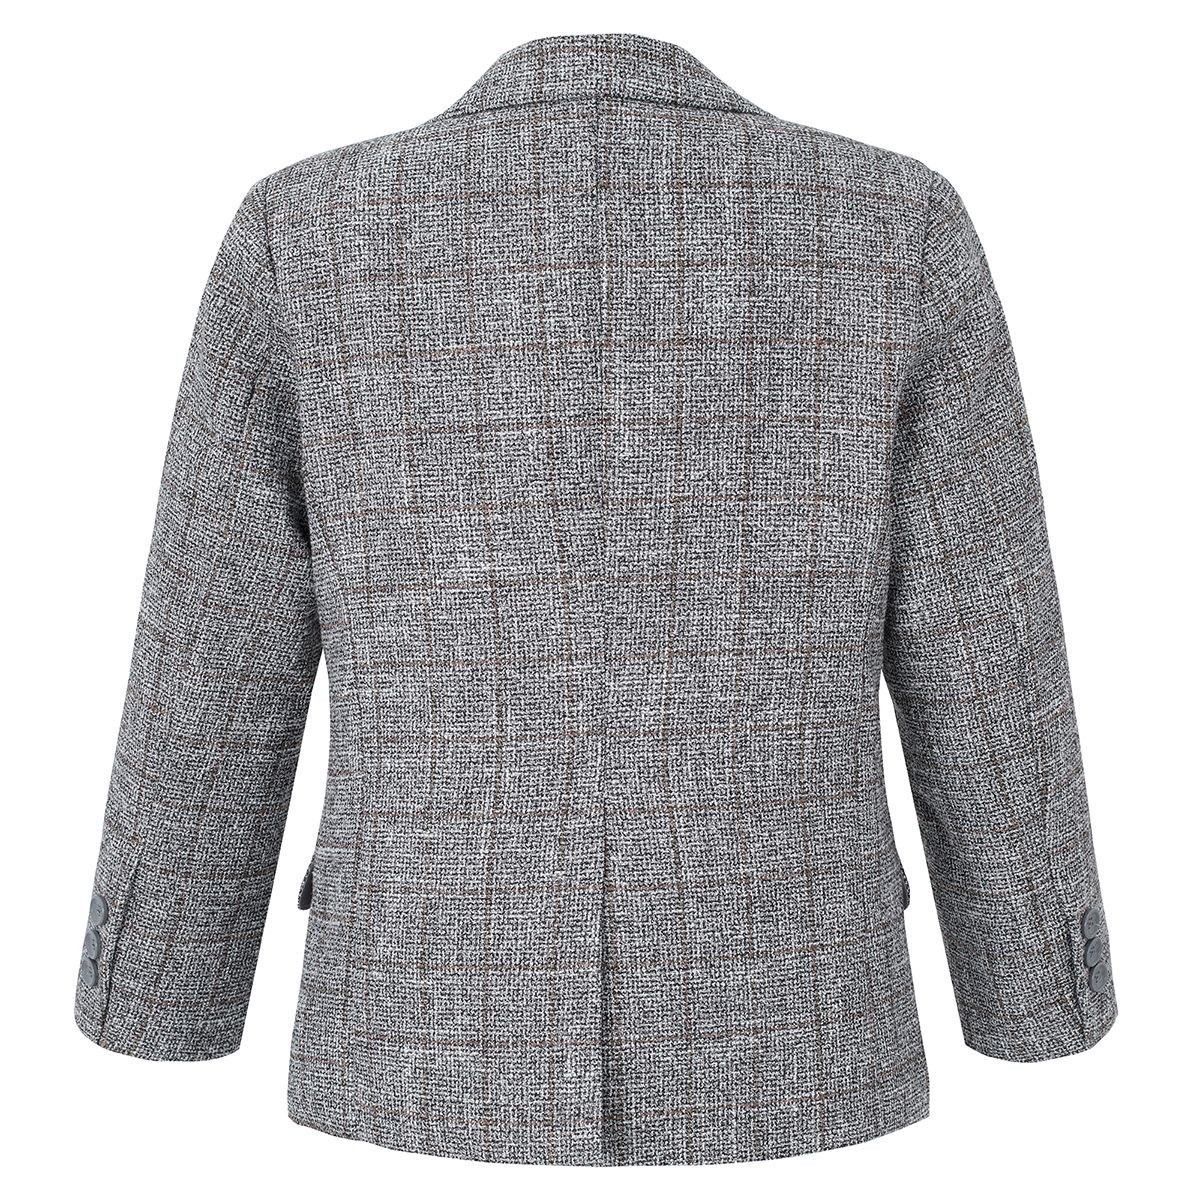 Jungen-Baumwoll-Tweed-ähnlicher Karo-Tailored-Fit-Blazer - Grey